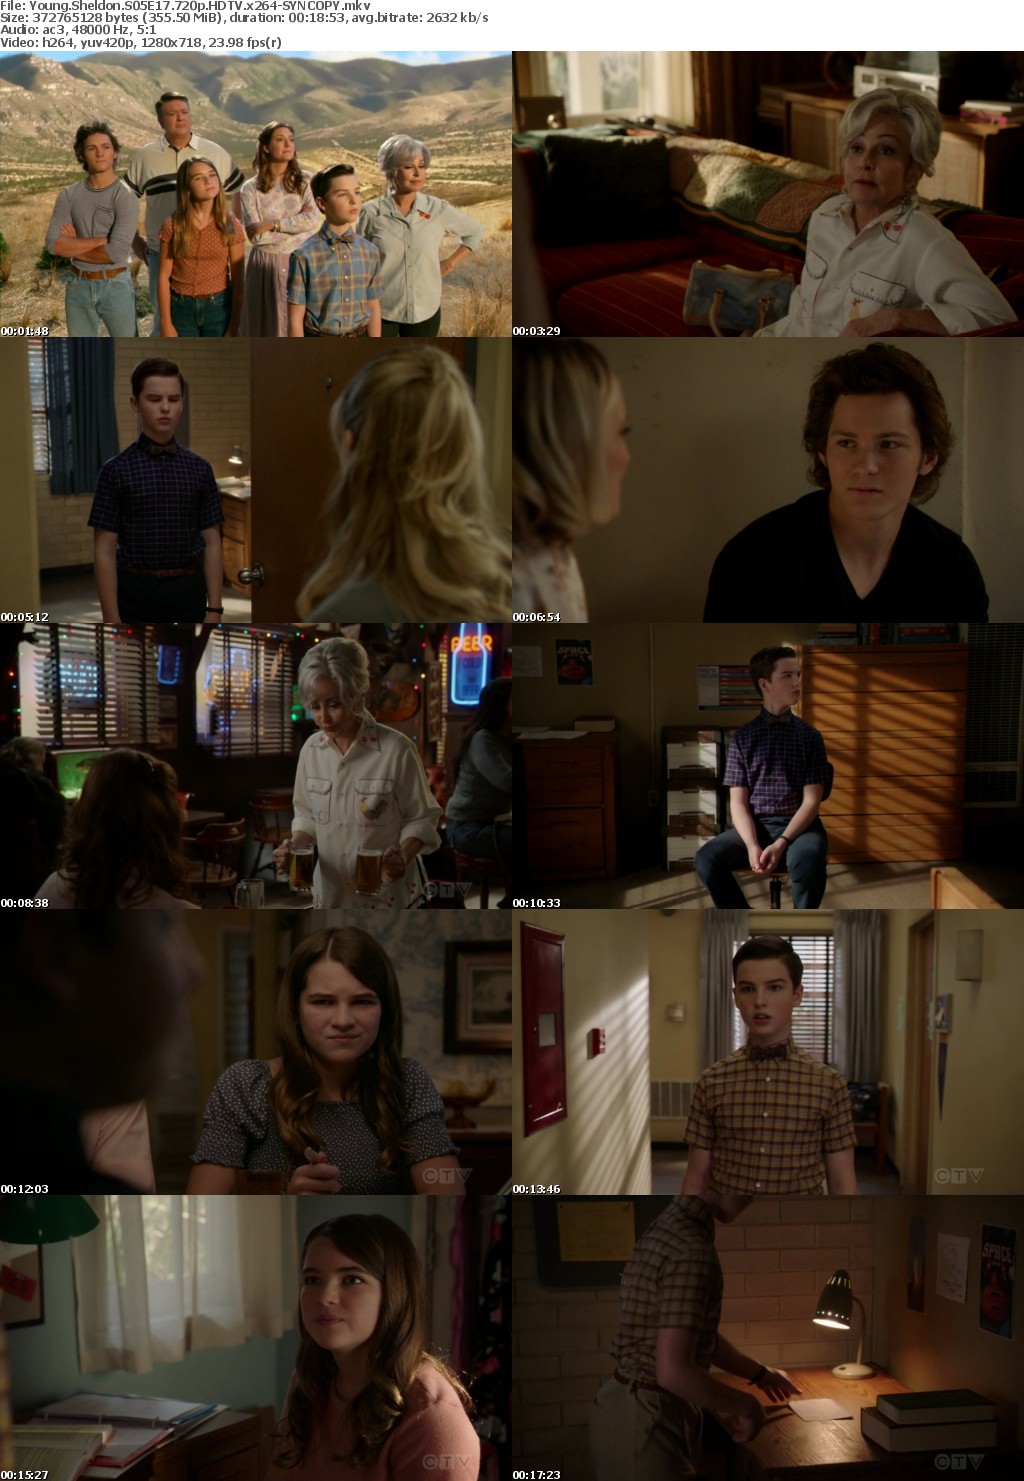 Young Sheldon S05E17 720p HDTV x264-SYNCOPY